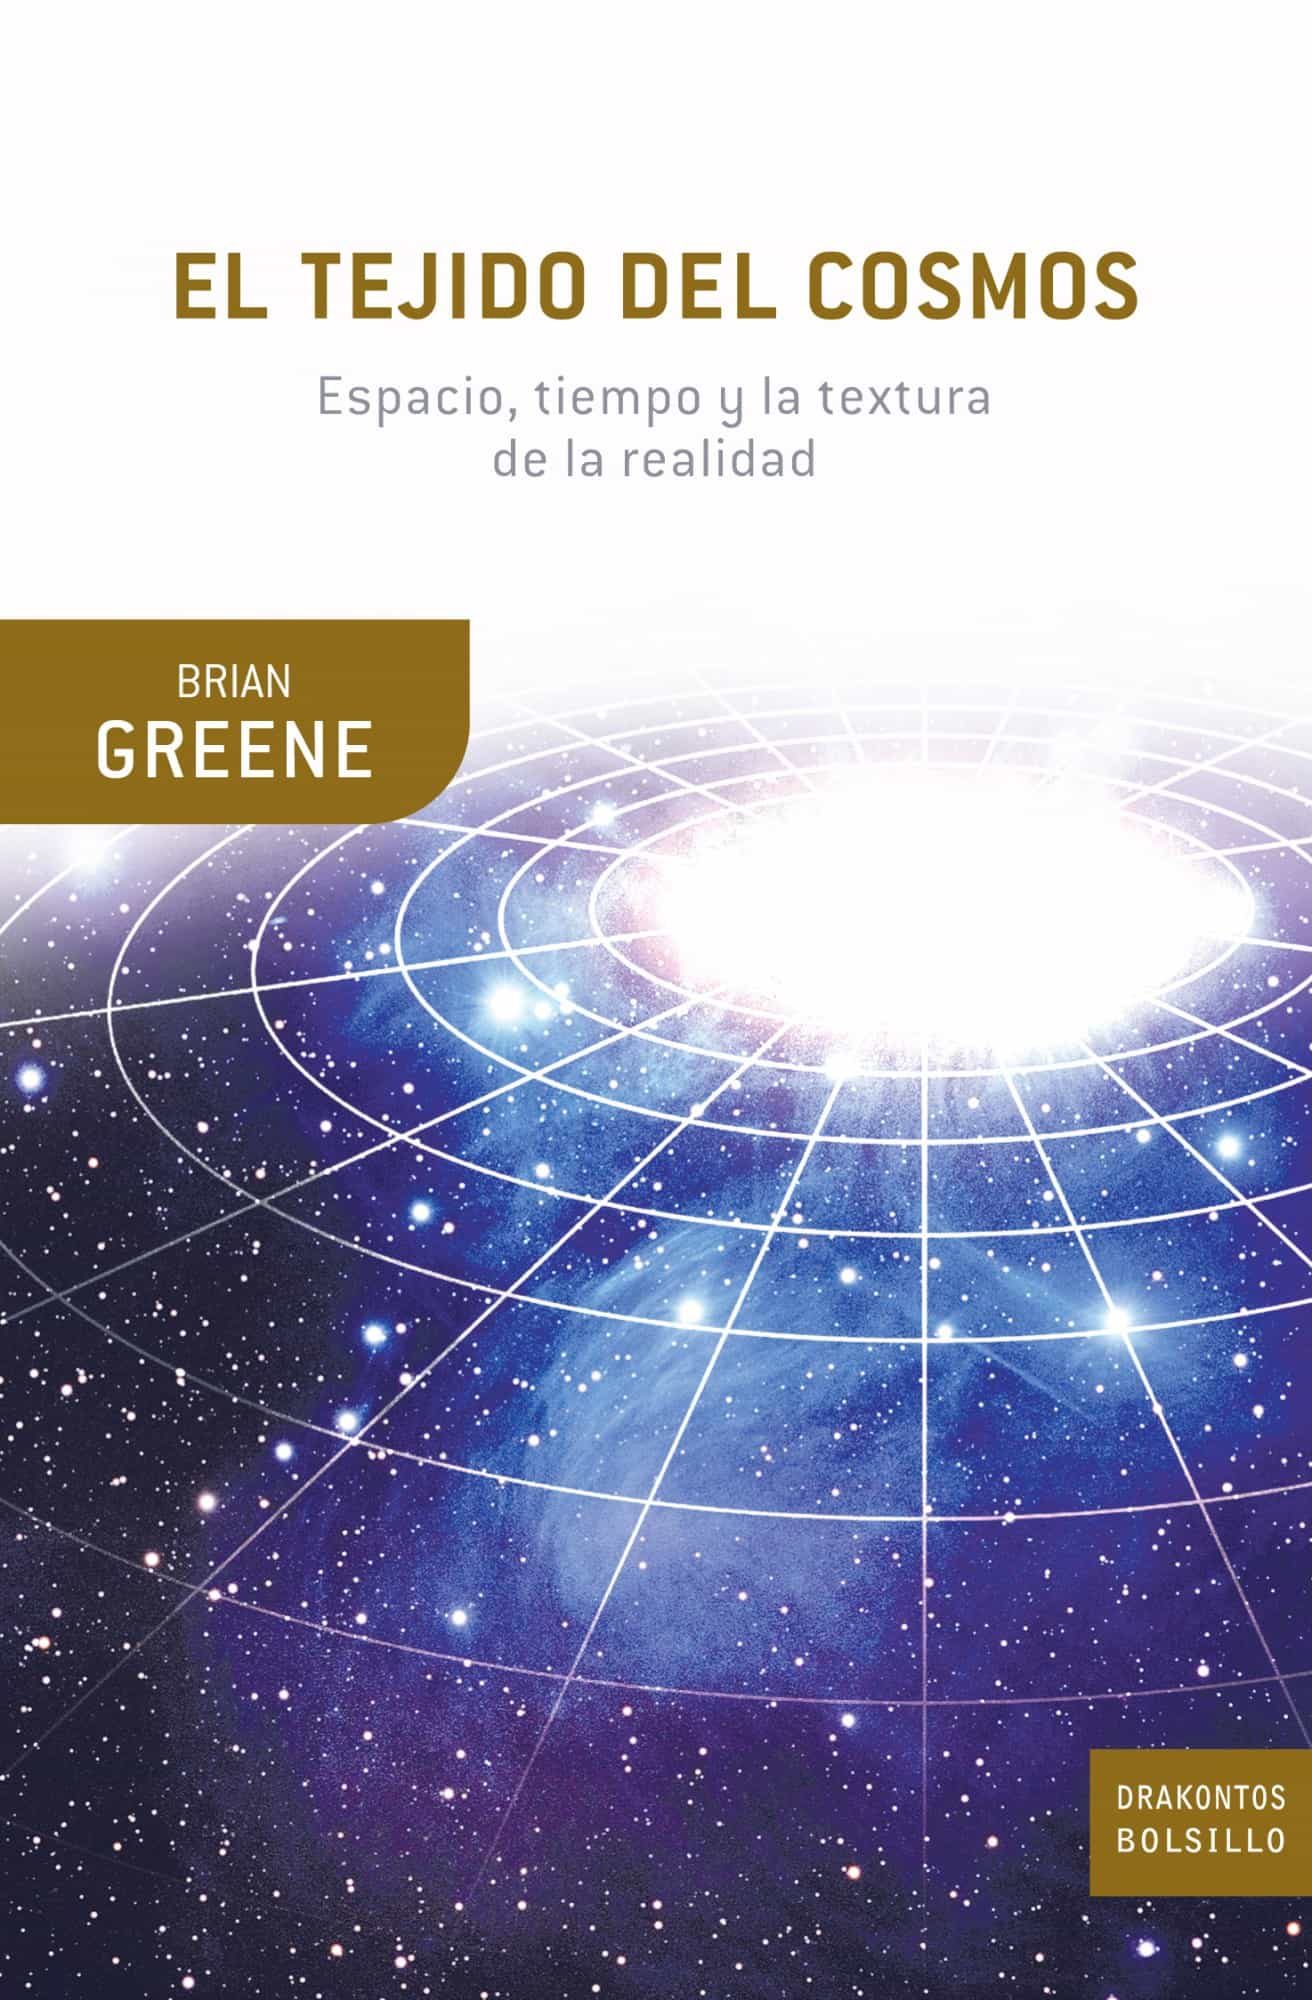 download brian greene el tejido del cosmos pdf software